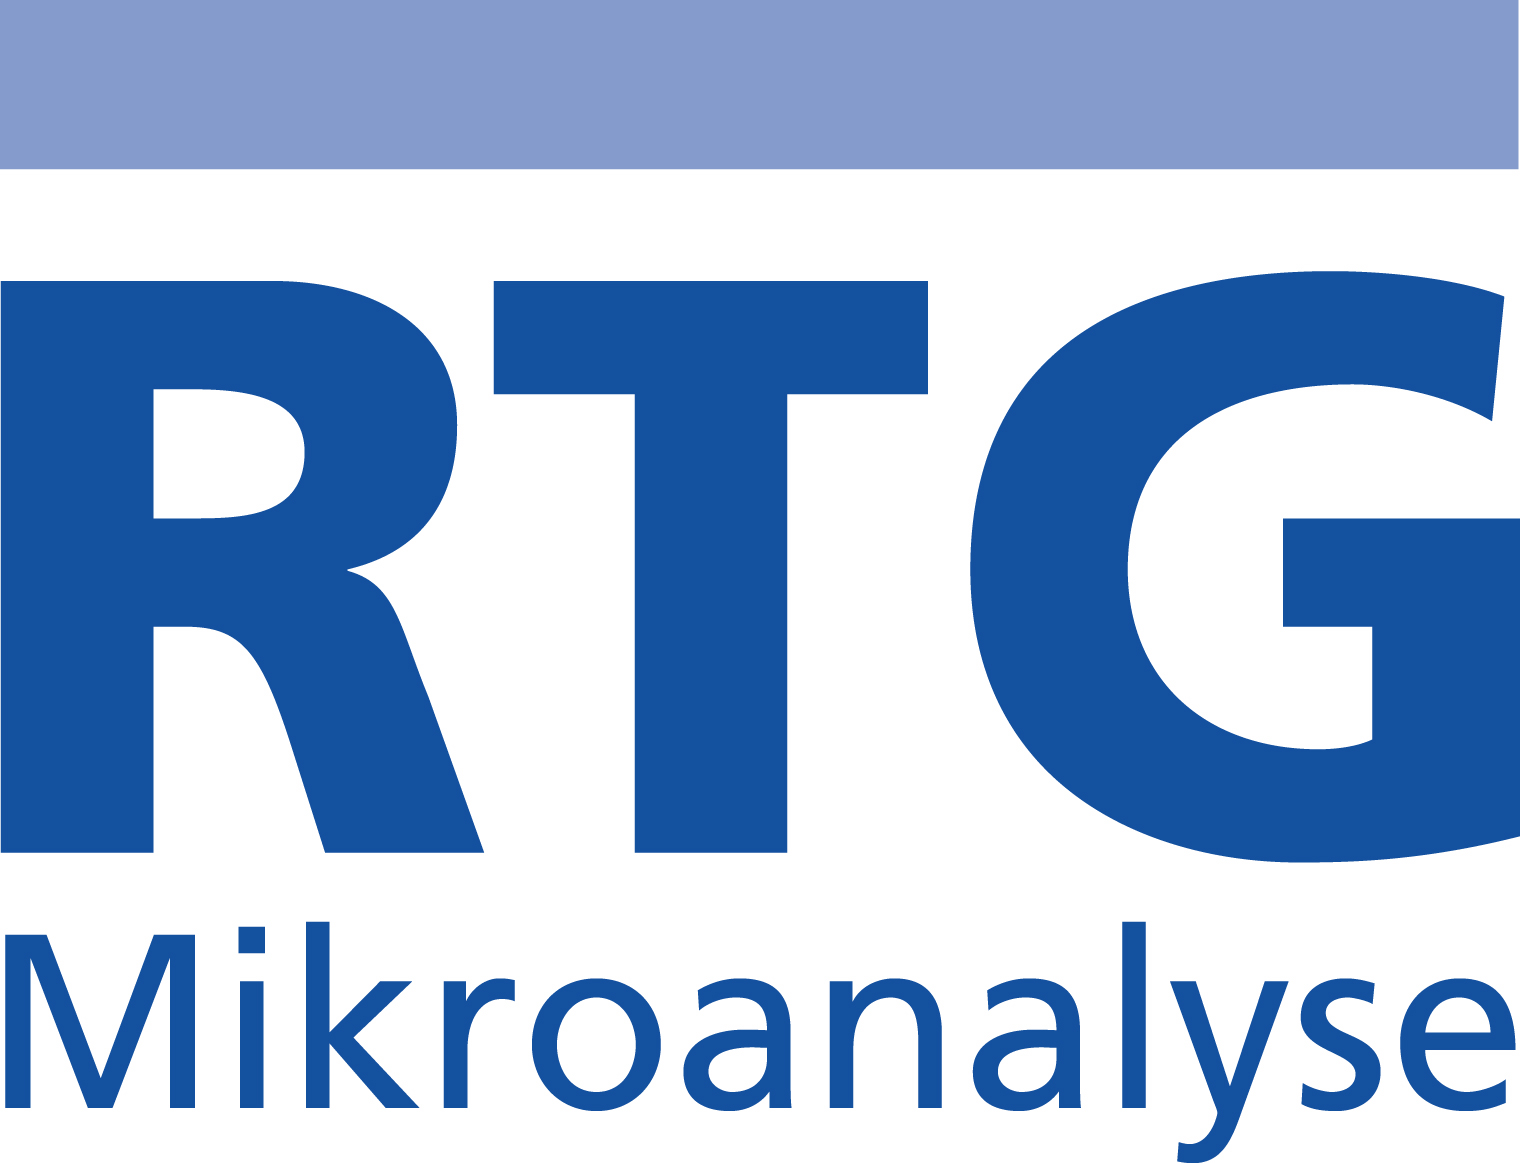 Logo von RTG Mikroanalyse GmbH